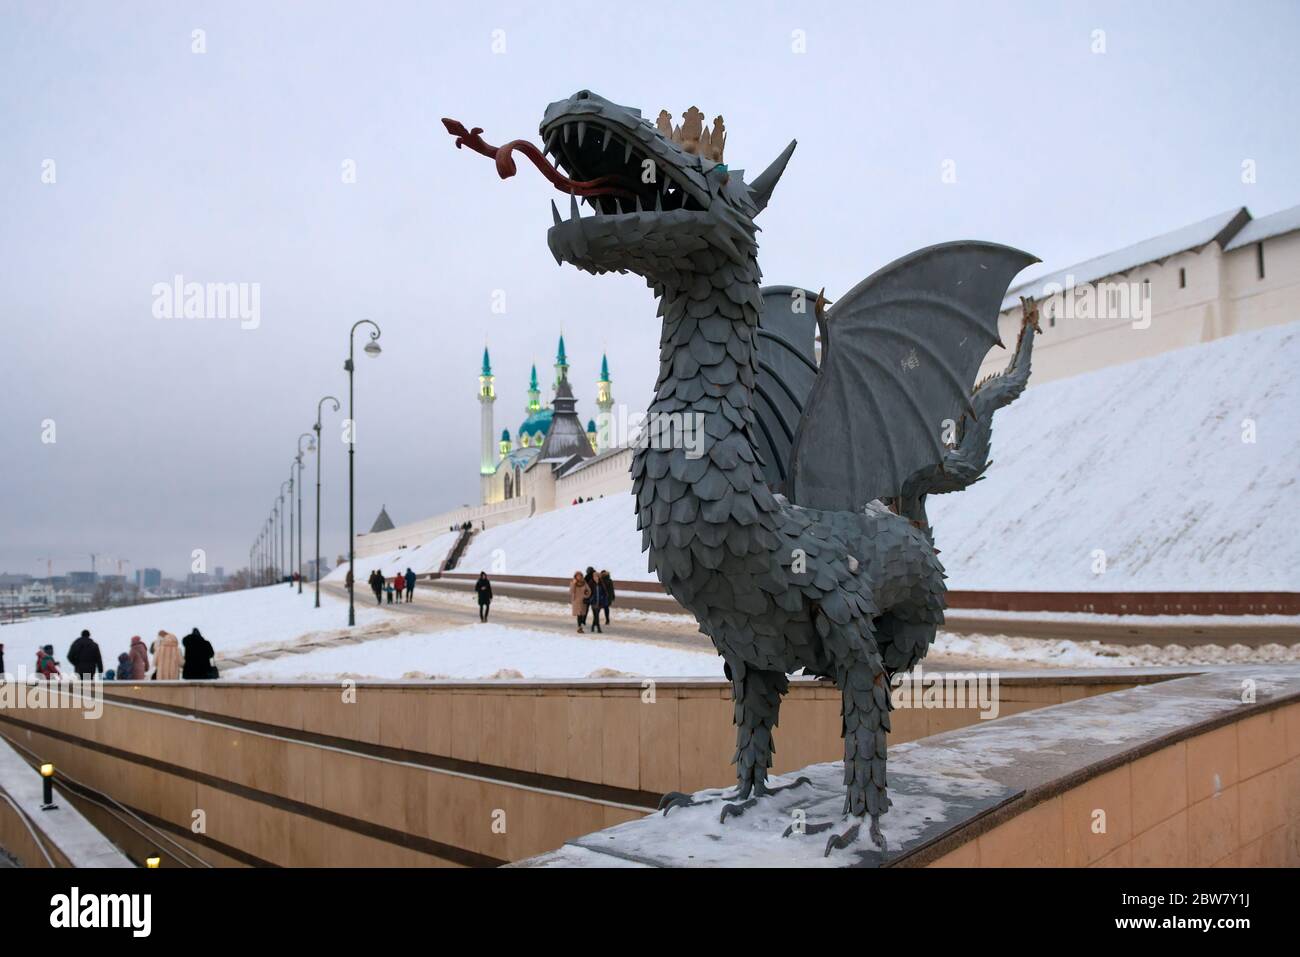 KAZAN, RUSSLAND - 3. JANUAR 2020: dragon Zilant ist das Symbol von Kazan in der Nähe der Kul Sharif Moschee und des Kasan Kreml an einem Winterabend Stockfoto